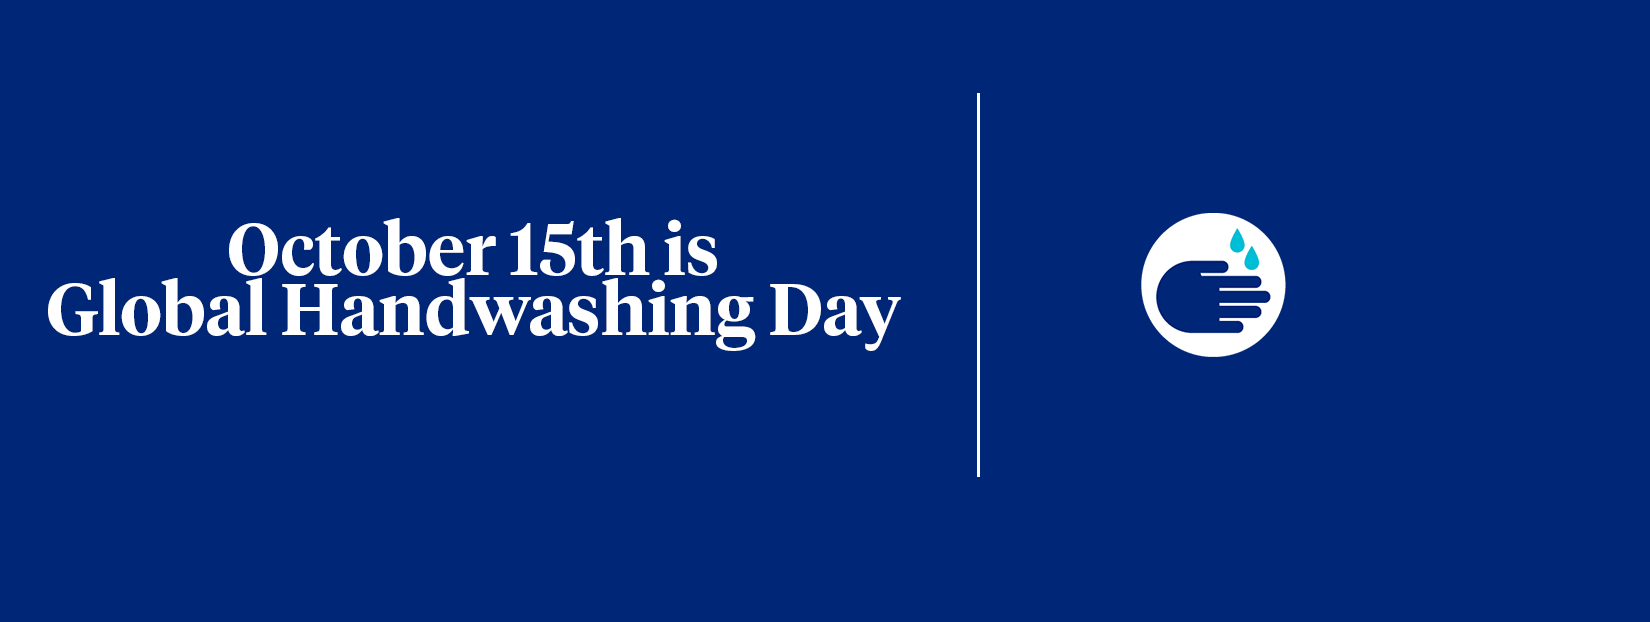 global-handwashing-day-2021